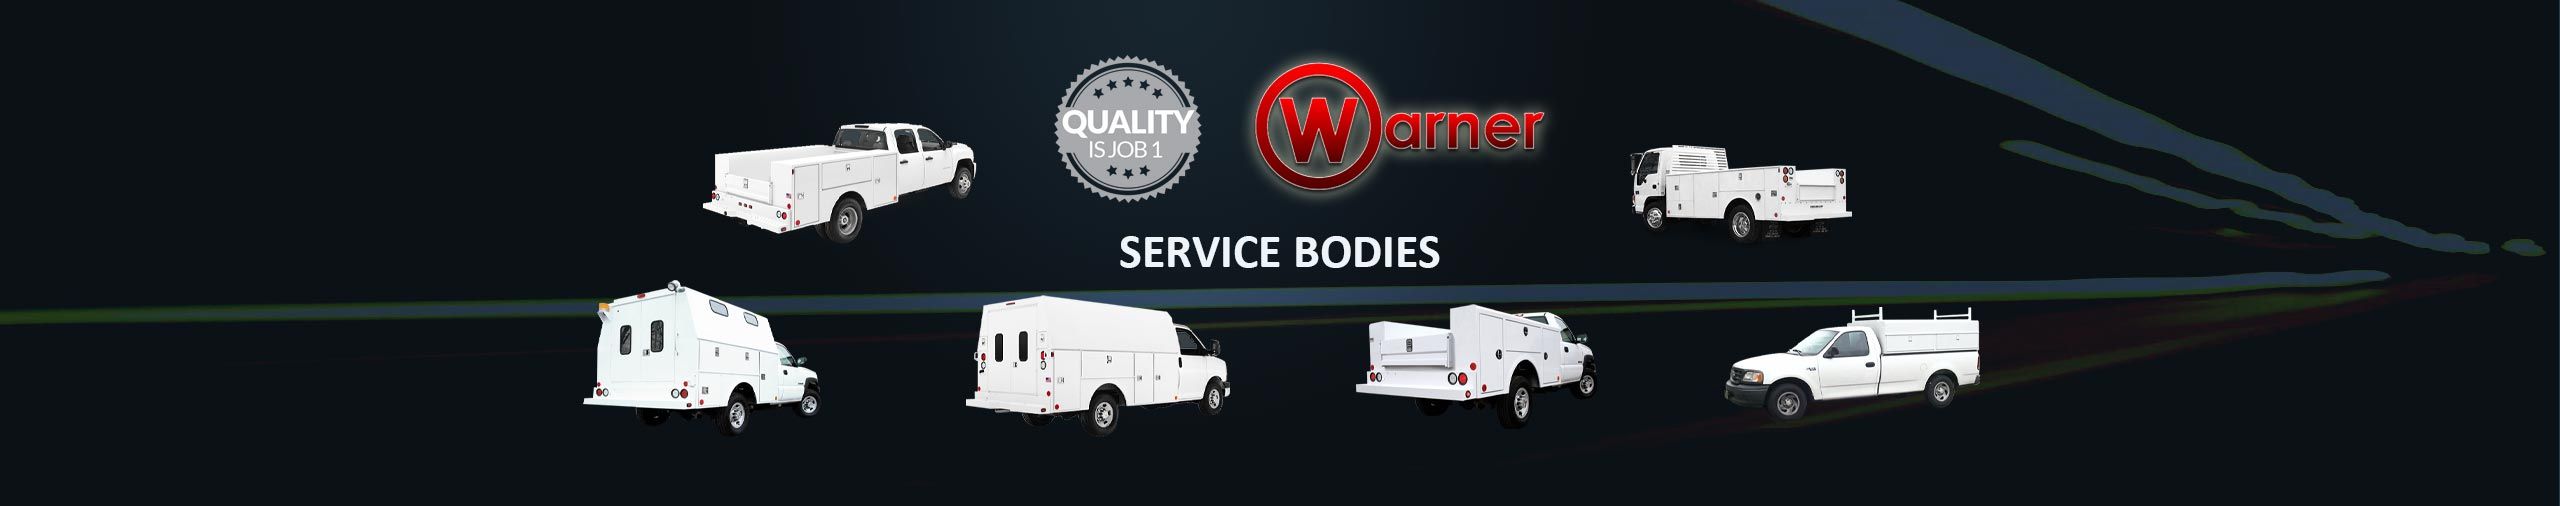 Warner Service Bodies